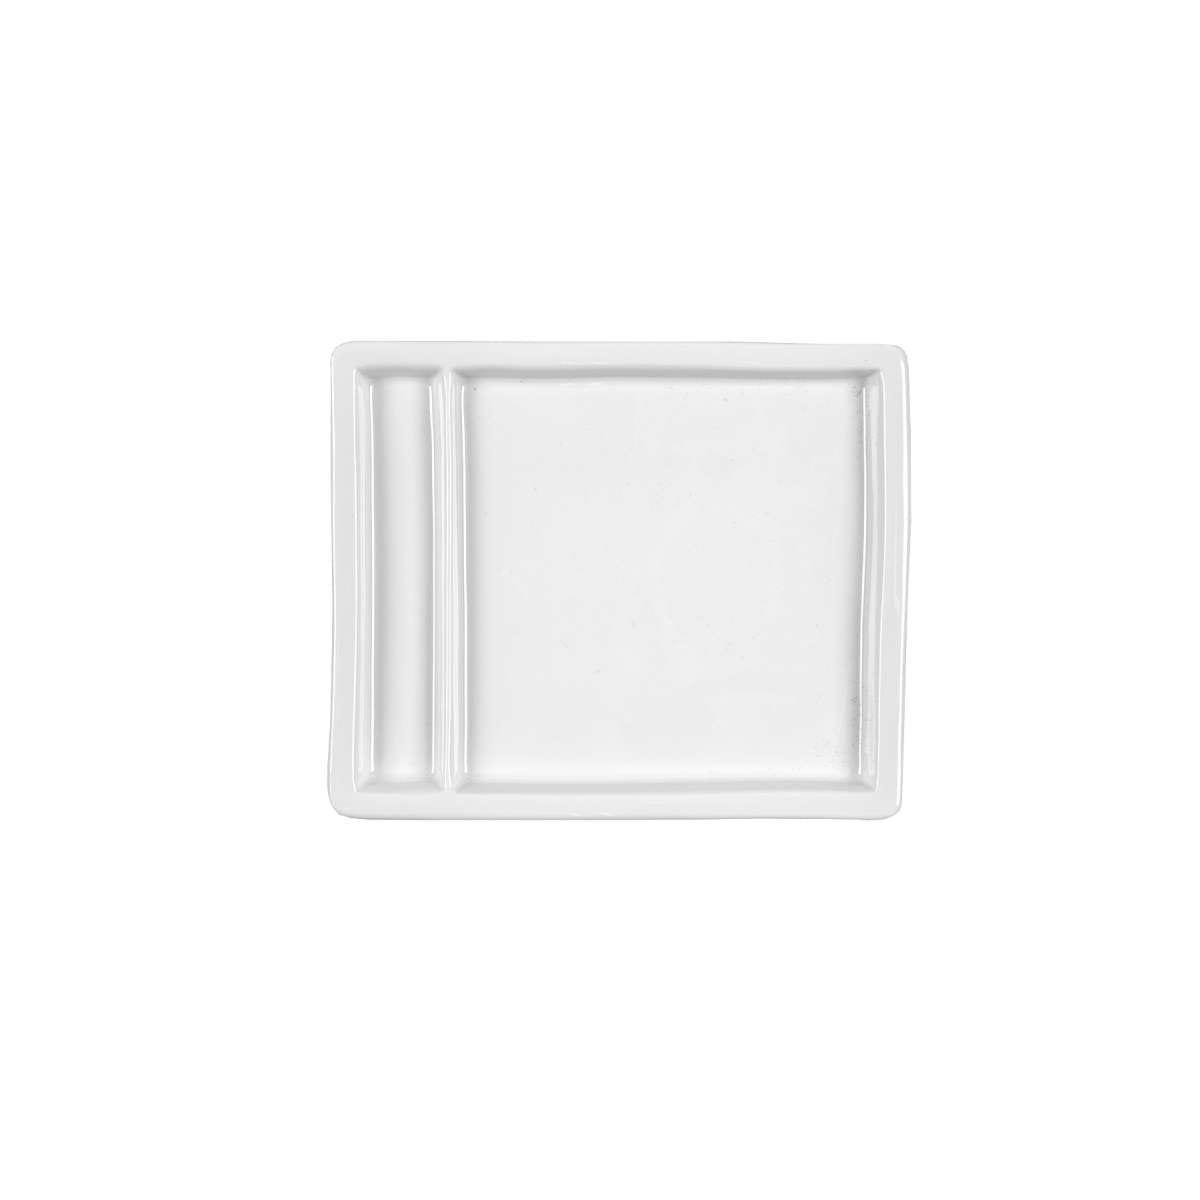 Πιάτο 2 Θέσεων Τετράγωνο Πορσελάνης Λευκό Art Et Lumiere 18x15x2εκ. 05951 (Σετ 6 Τεμάχια) (Υλικό: Πορσελάνη, Χρώμα: Λευκό, Μέγεθος: Μεμονωμένο) - Art Et Lumiere - lumiere_05951